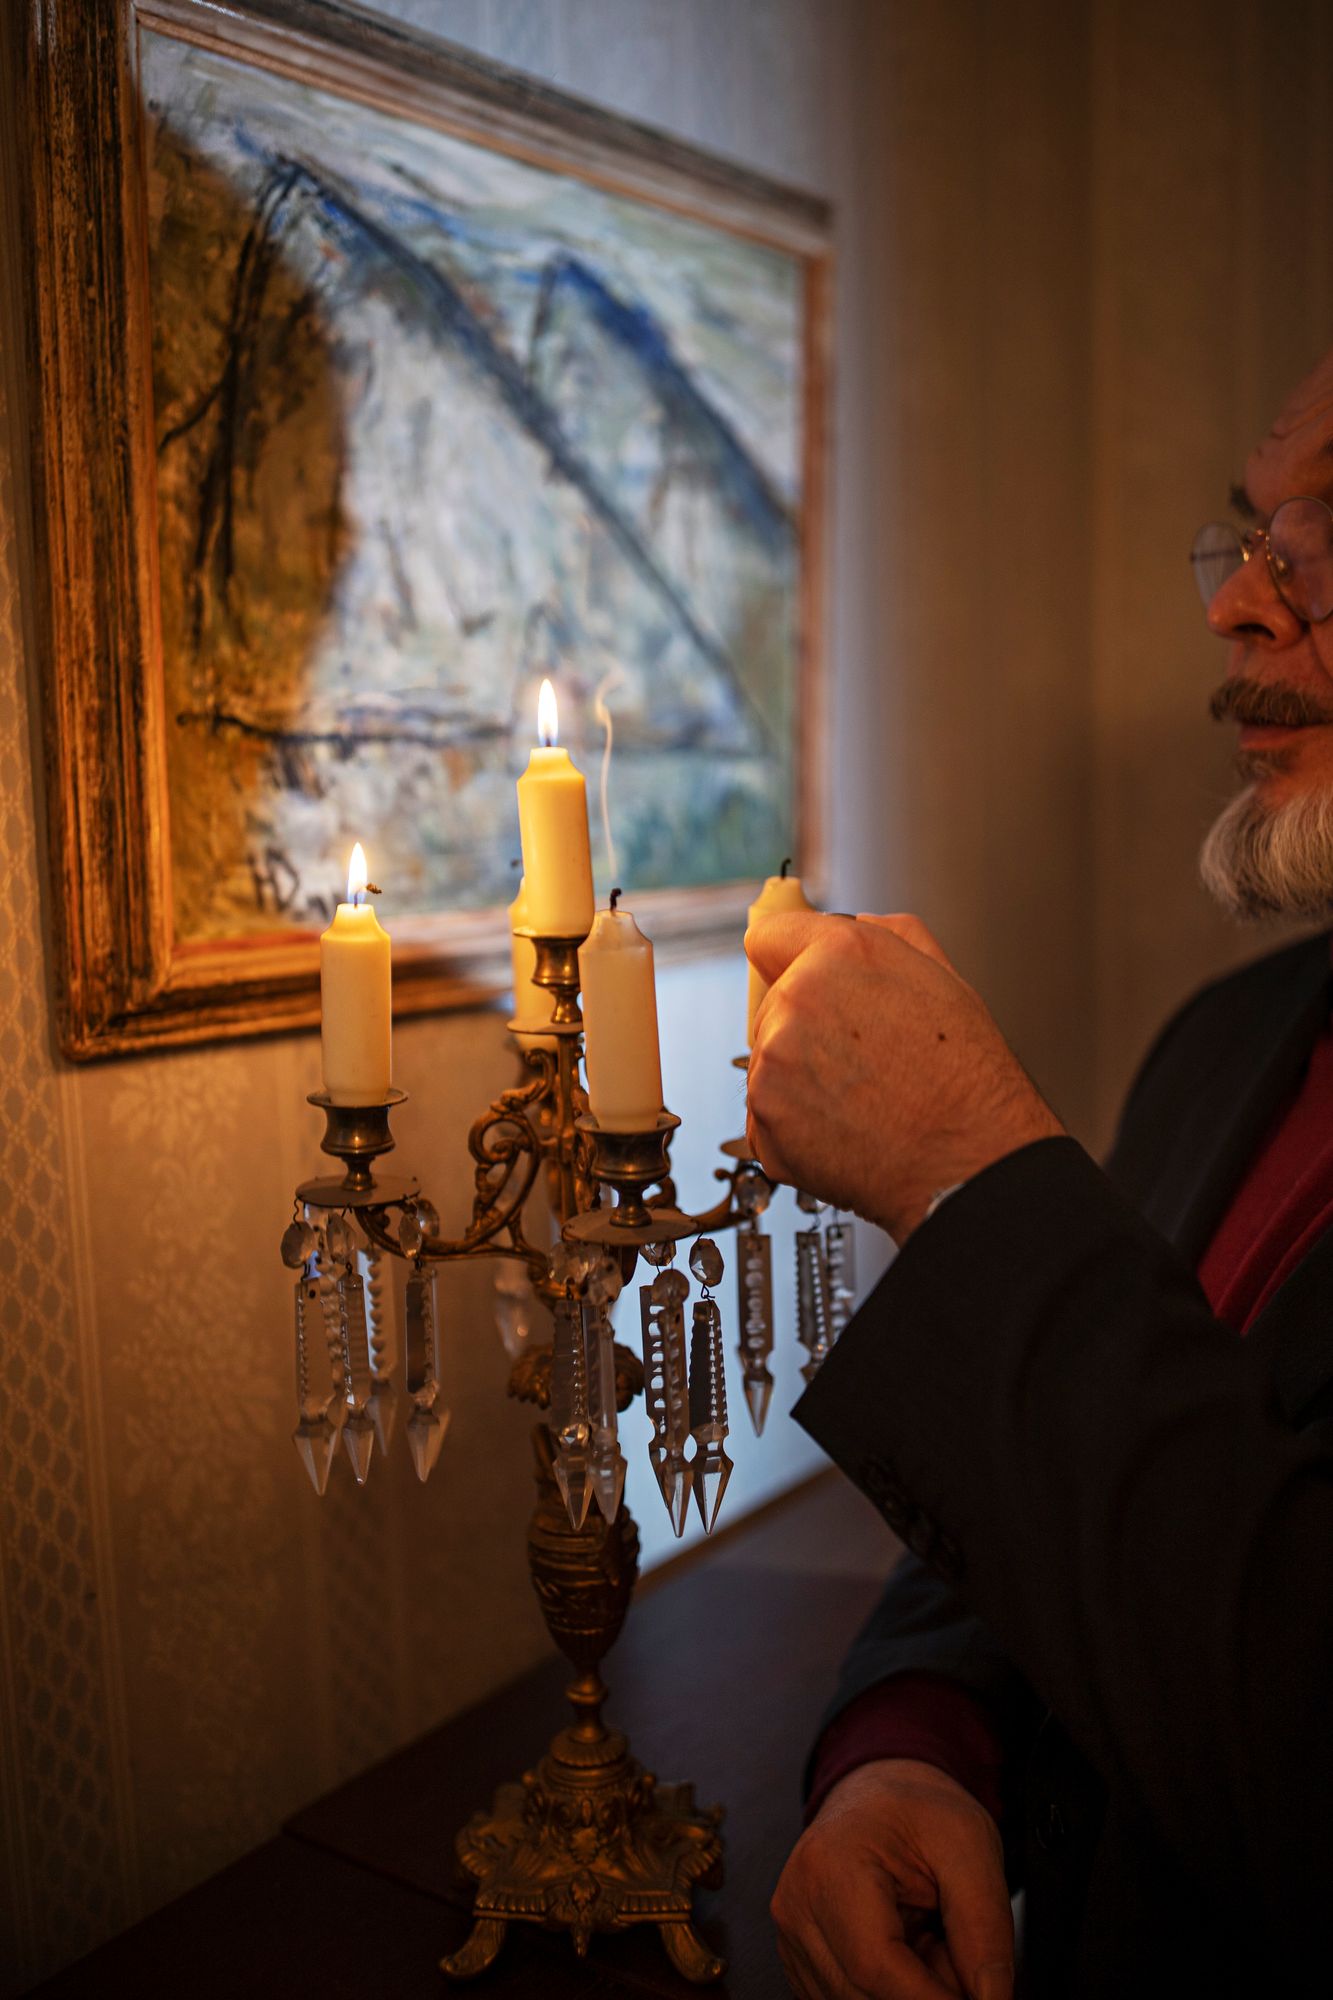 Kun iso­vanhemmat järjestivät joulukuun juhlat, asunnossa paloi aina kynttilöitä. © Marjo Tynkkynen